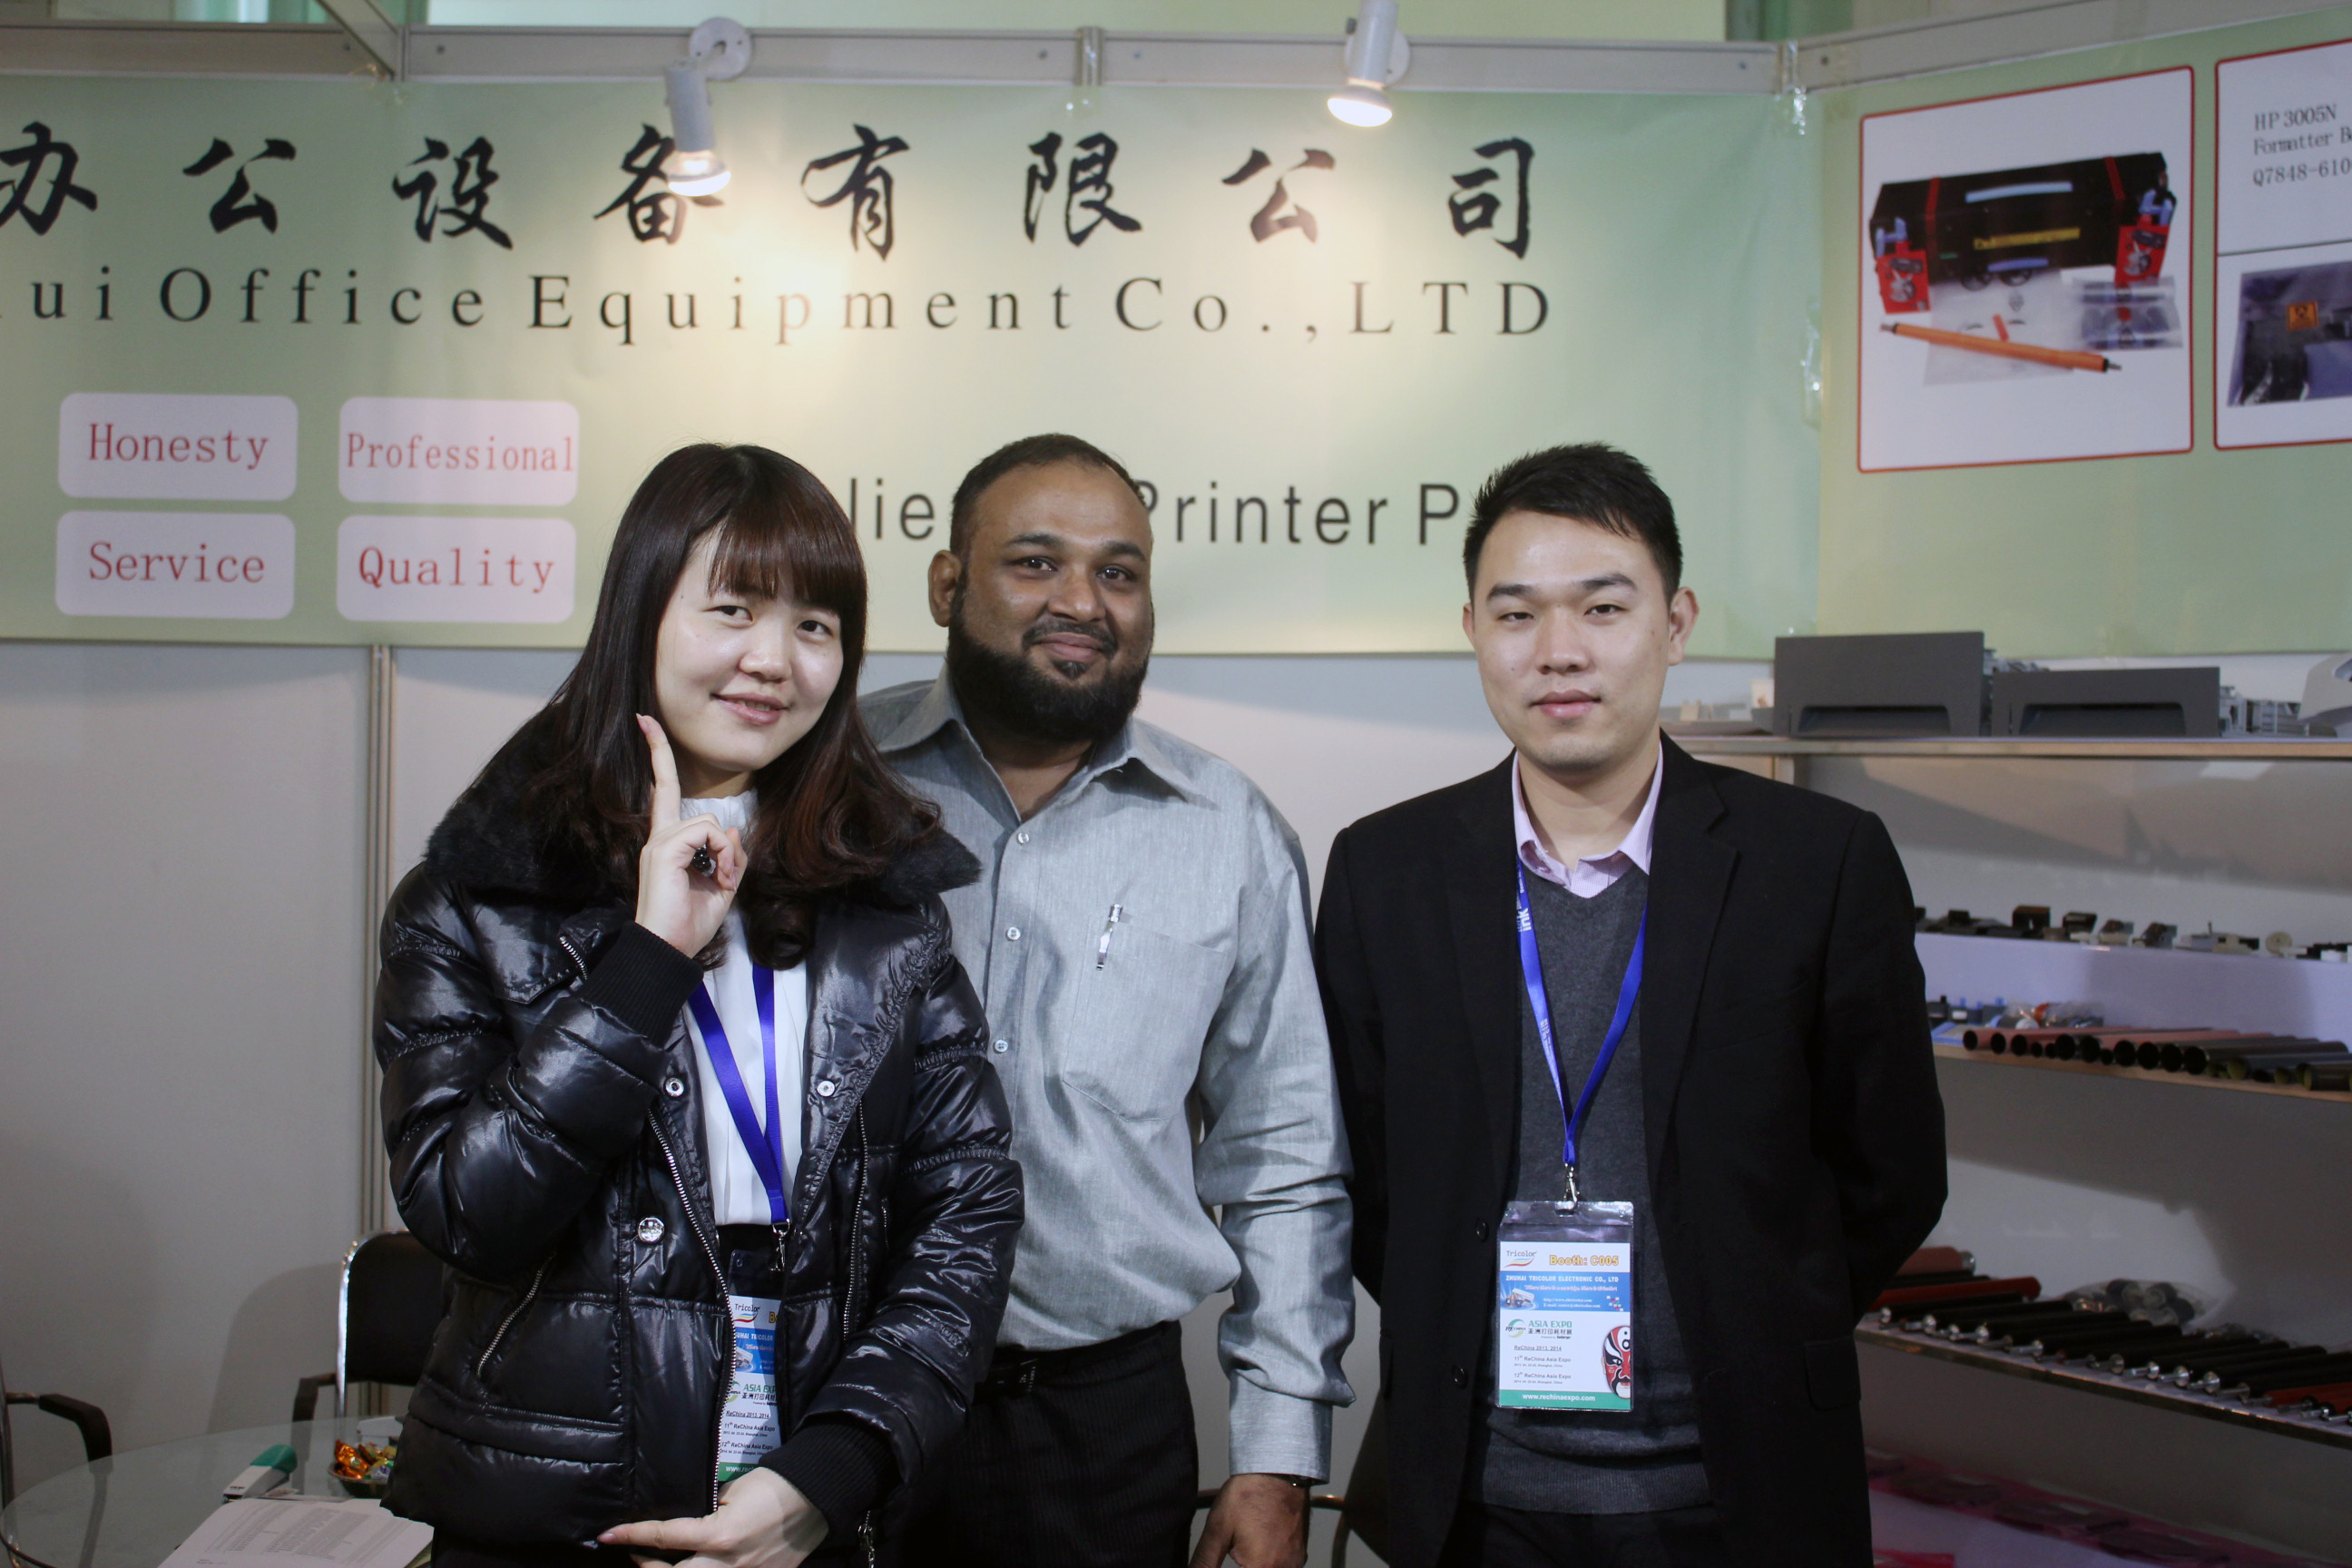 Guangzhou Jinghui Printer Parts in ReChina 2012 in Shanghai